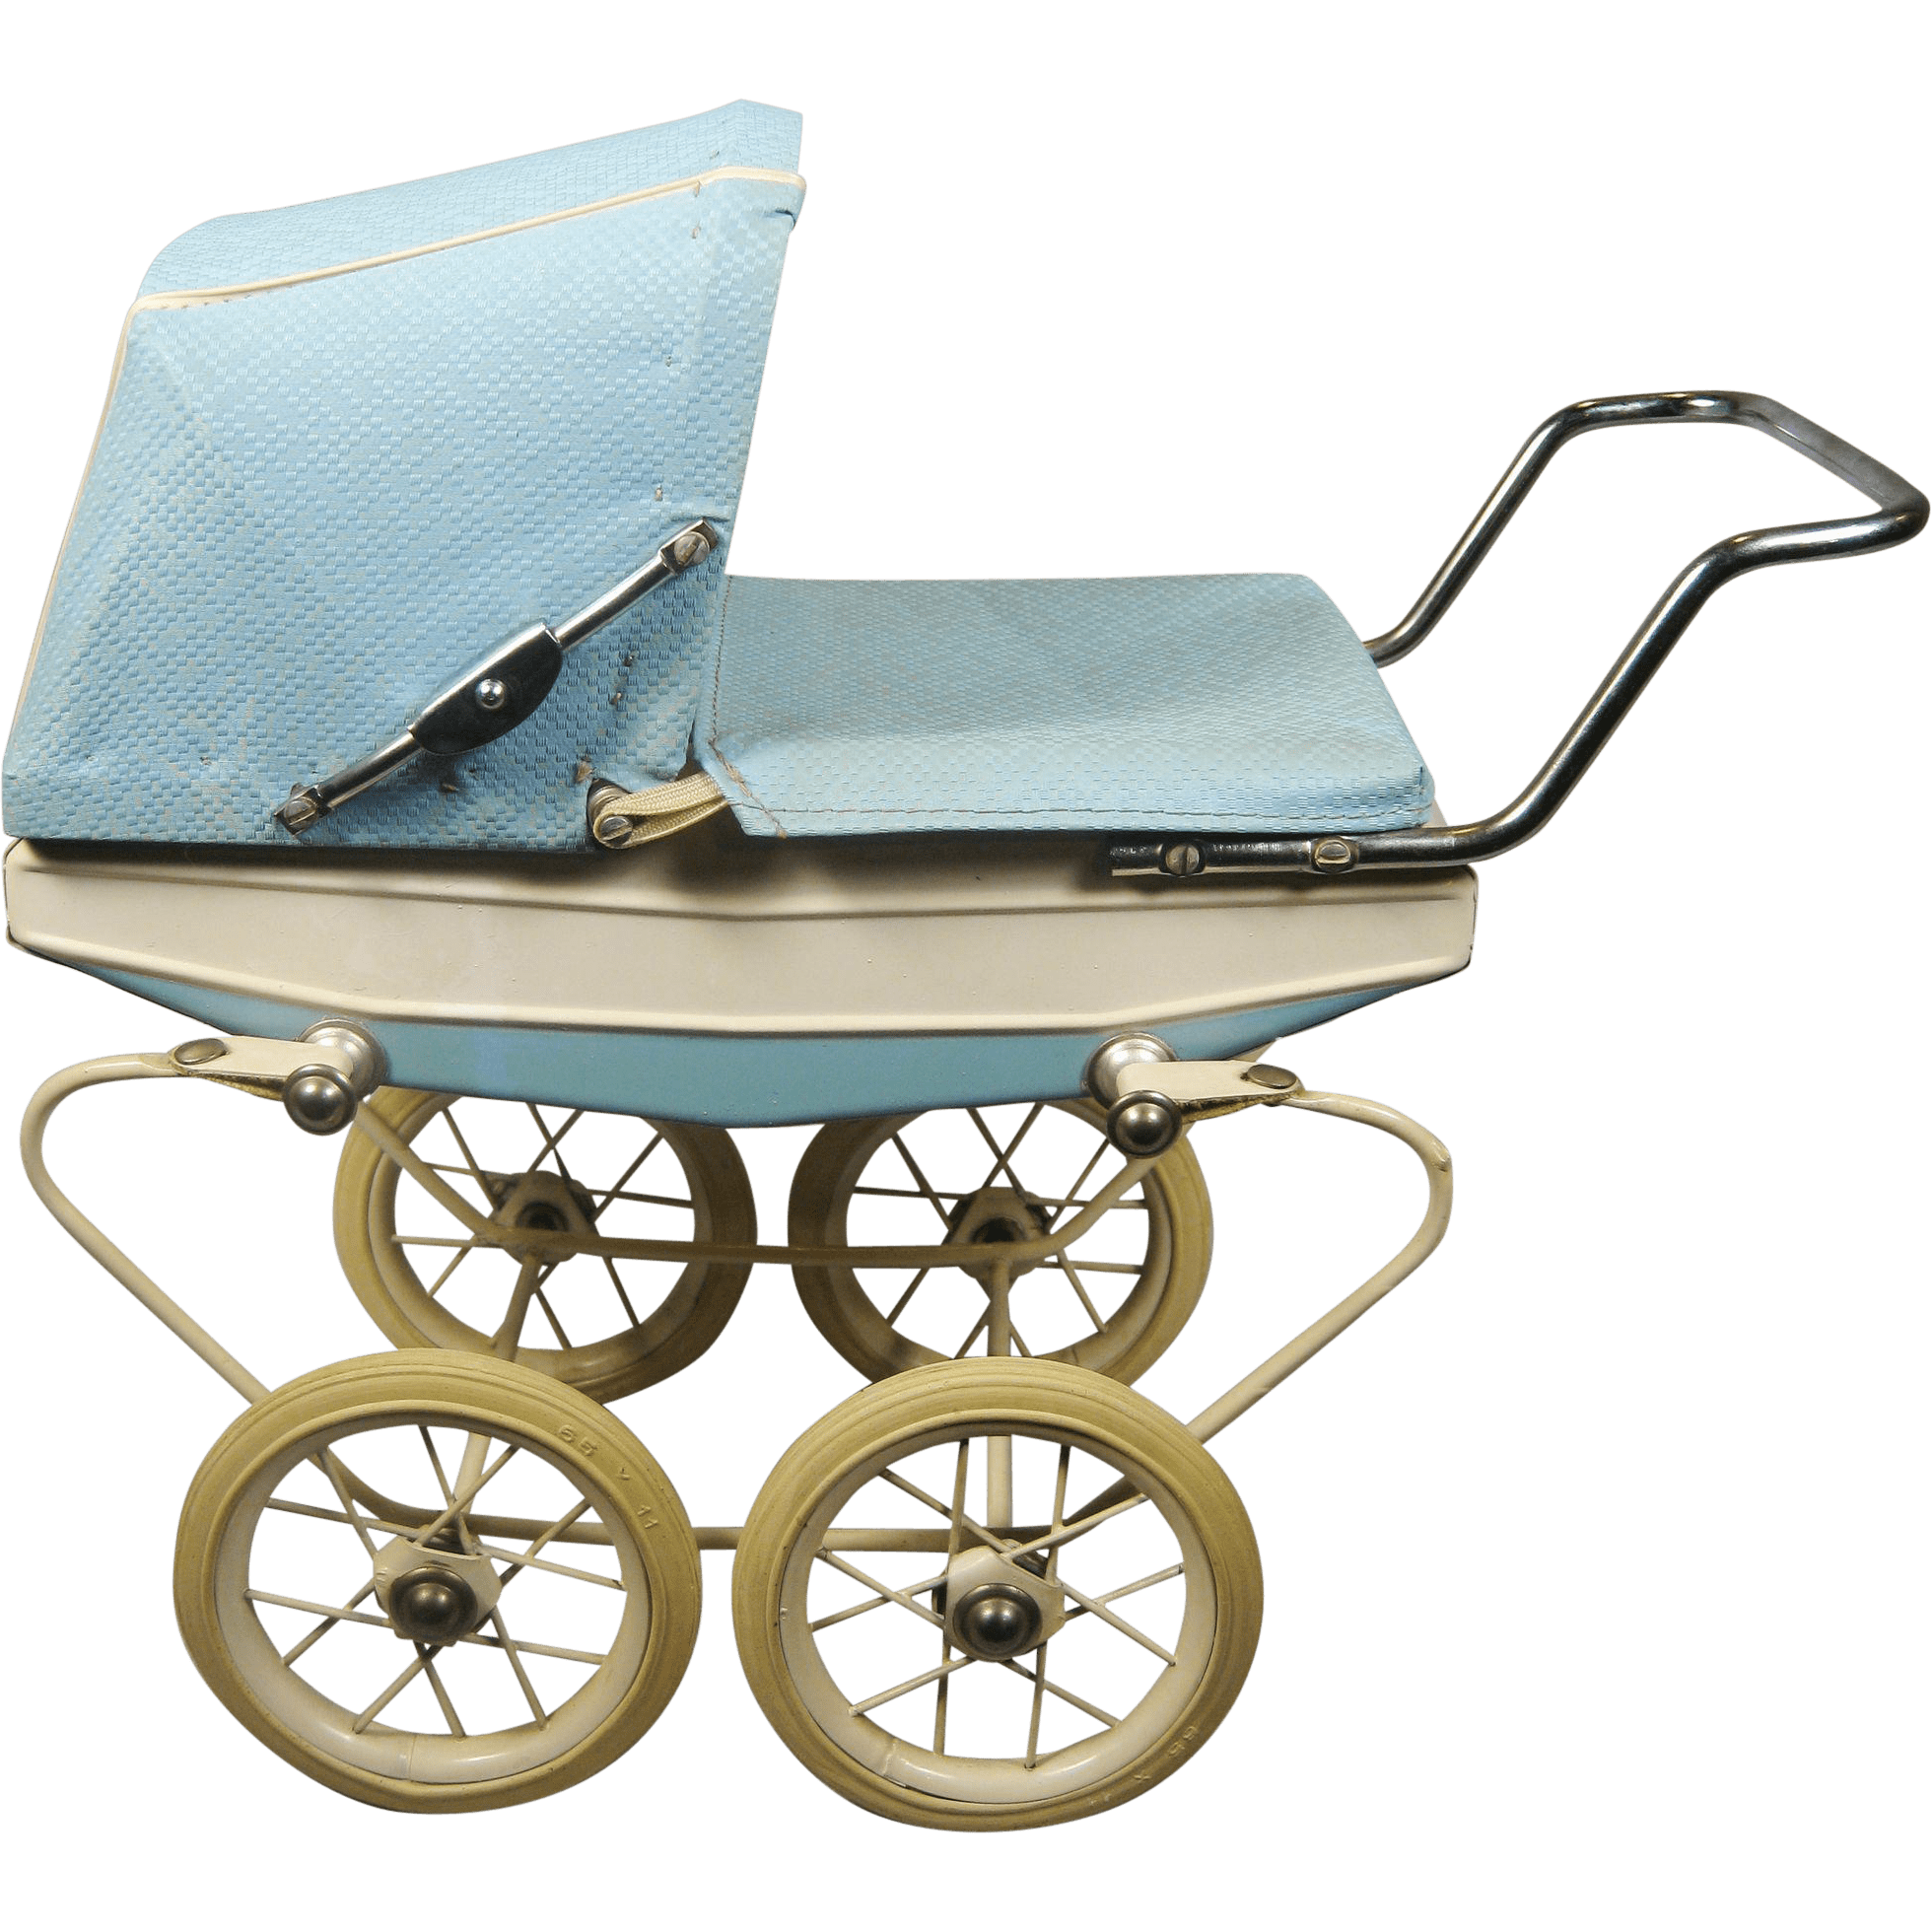 Pram Baby Stroller PNG Transparent Image